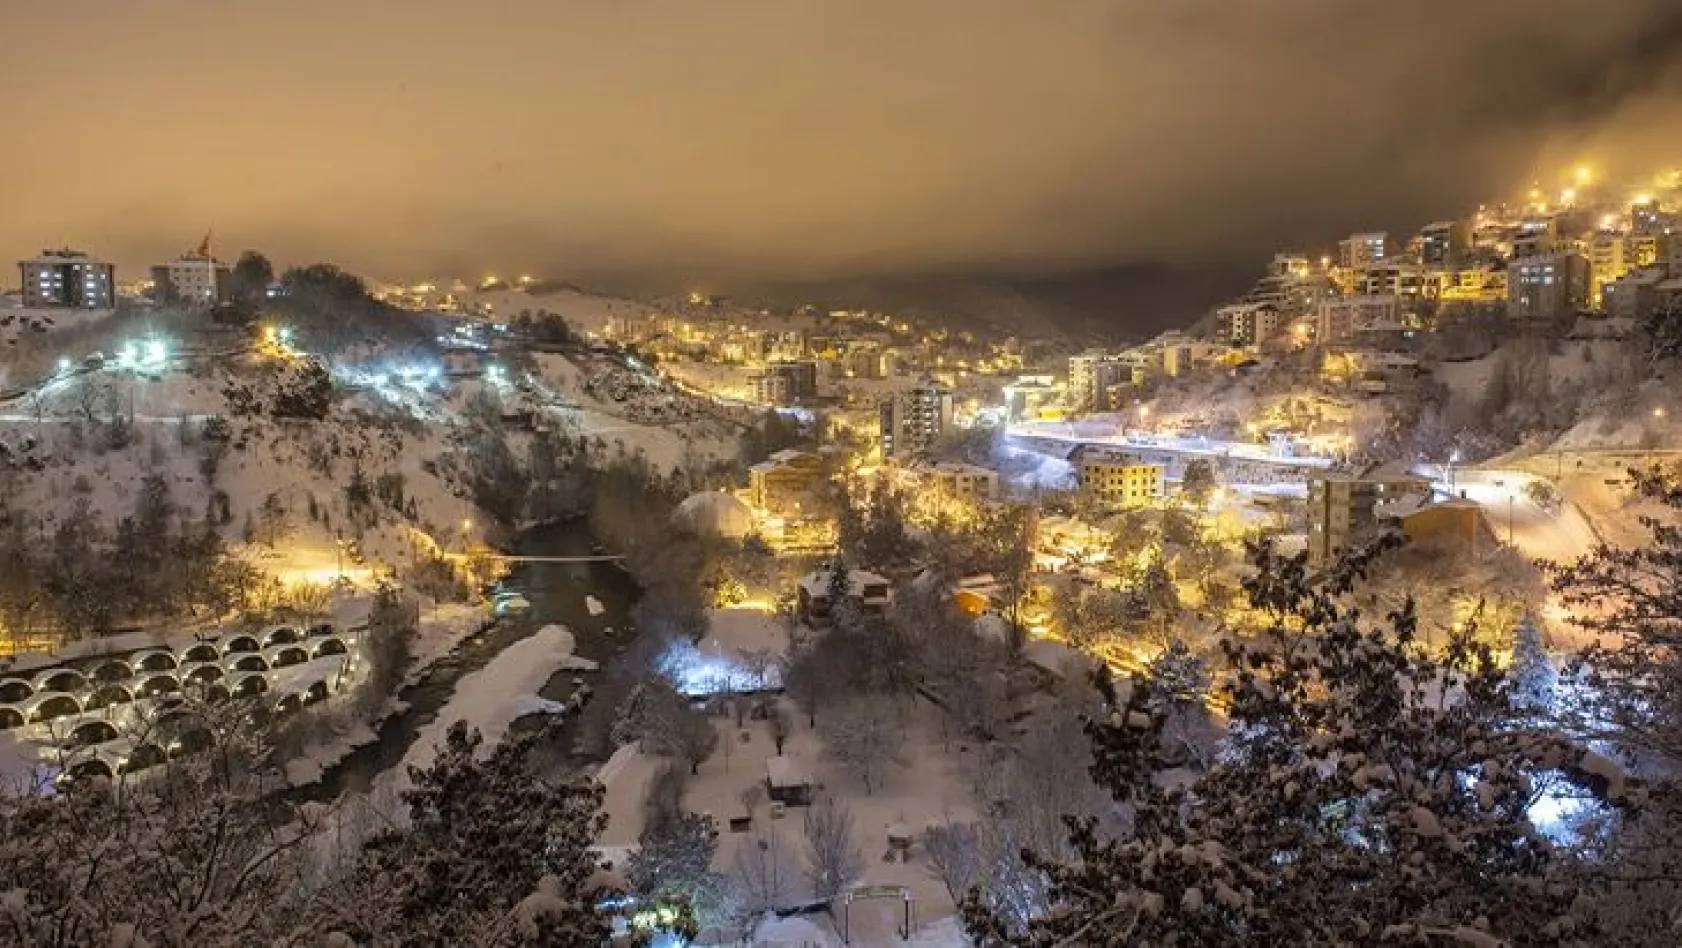 Tunceli'de kar yağışı geceye ayrı güzellik kattı